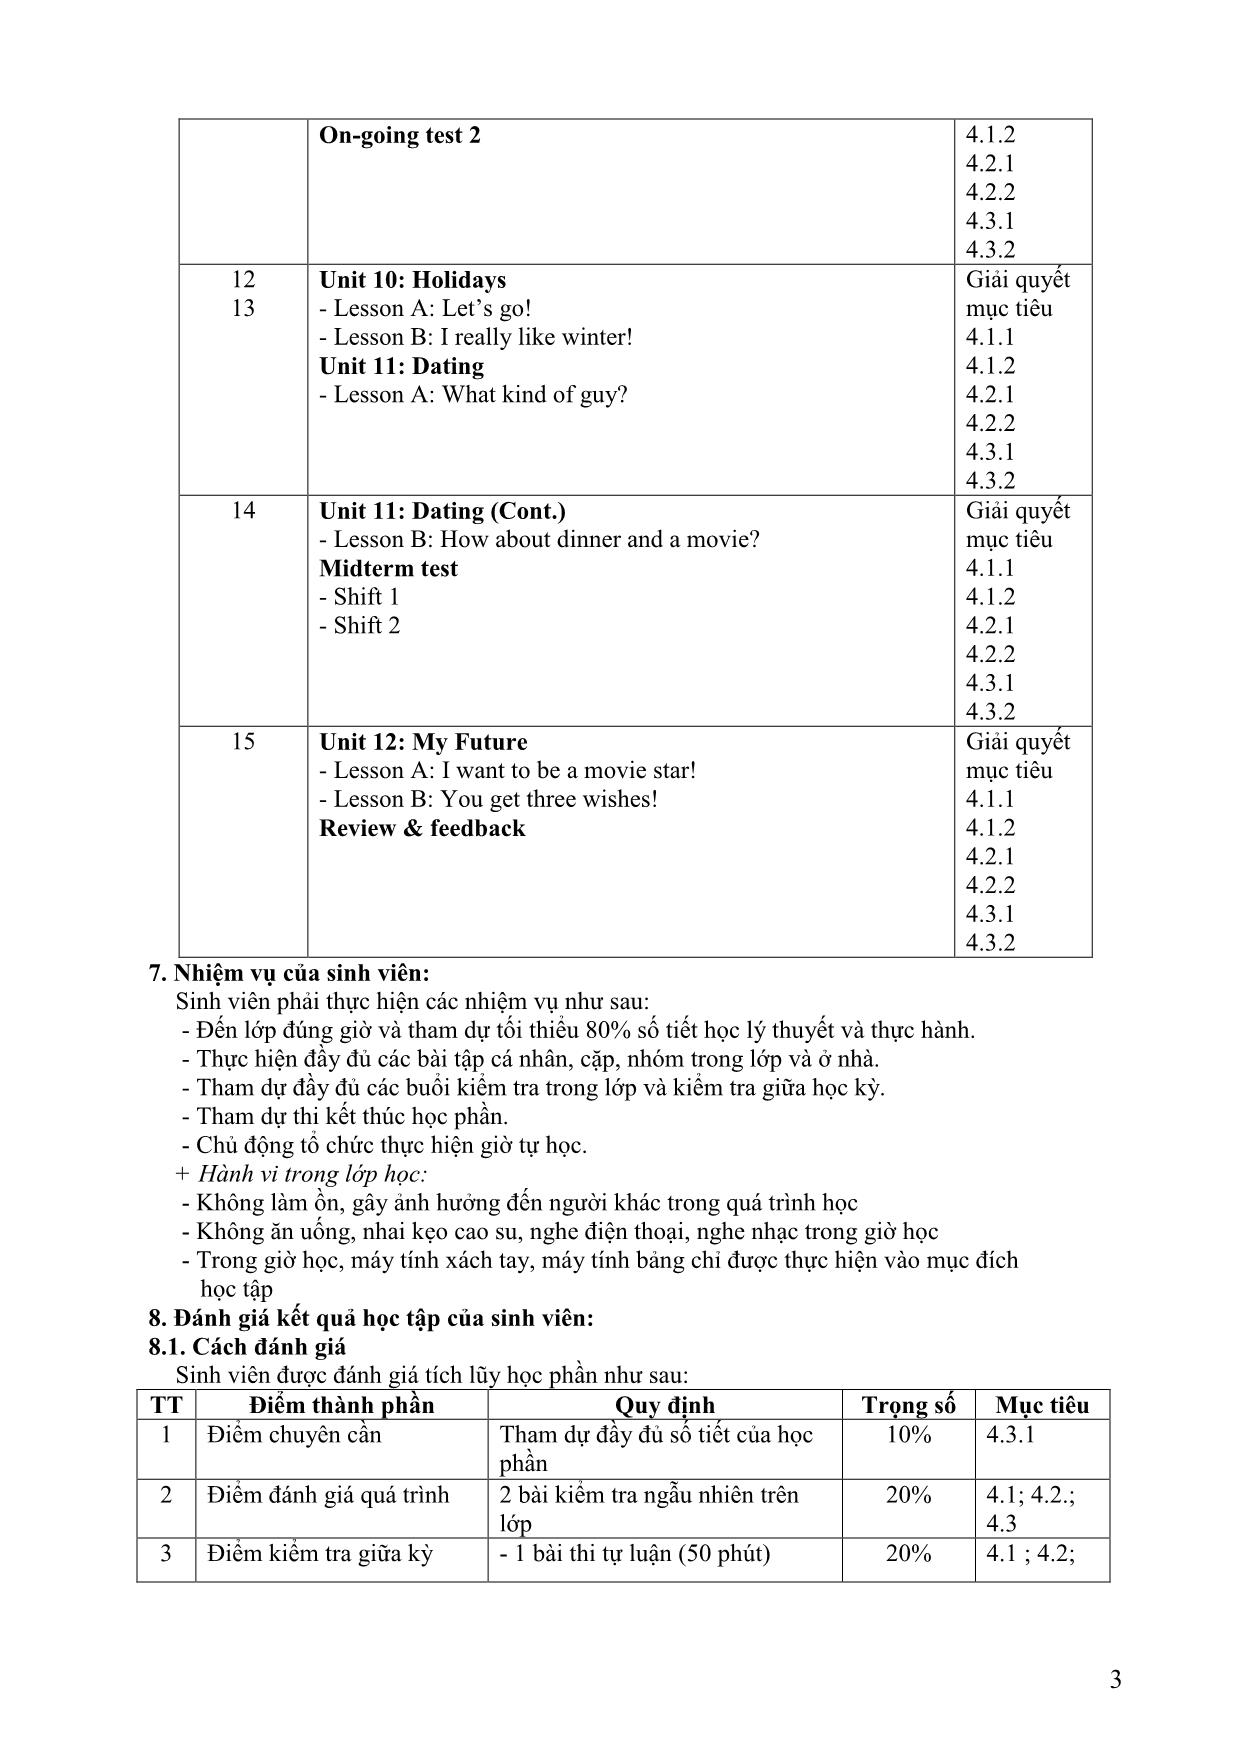 Đề cương học phần Nghe tiếng Anh 1 (Listening 1) trang 3